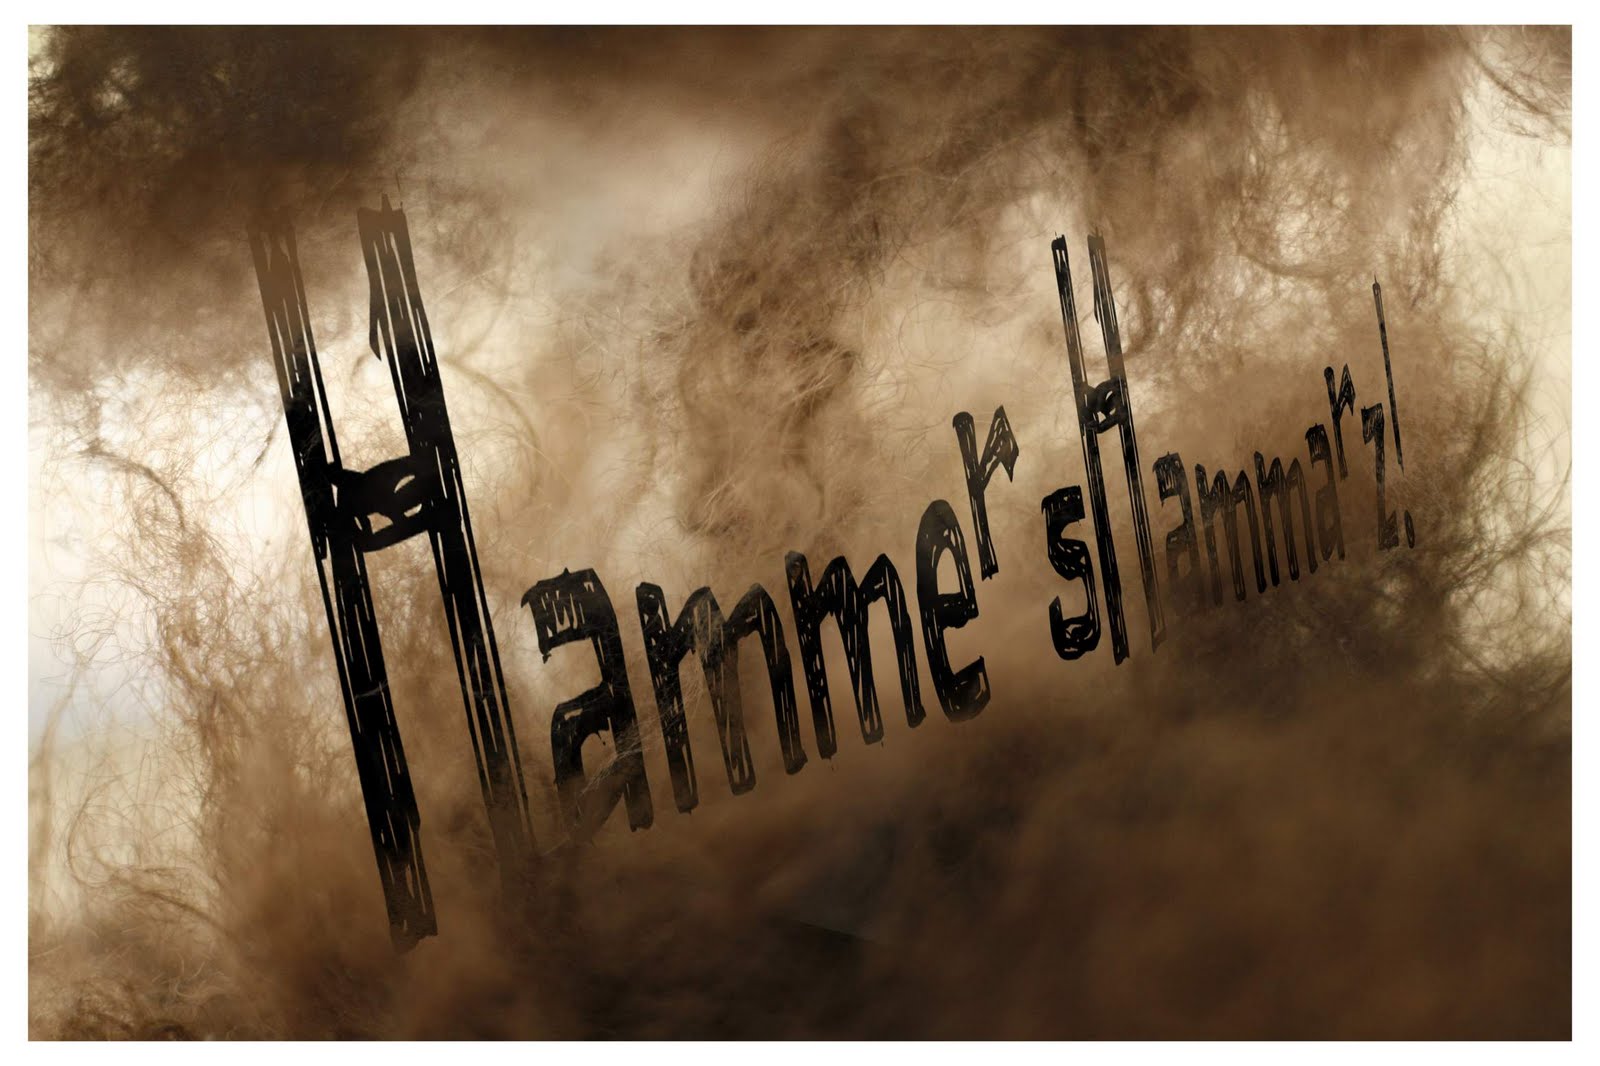 HammersHammarz!